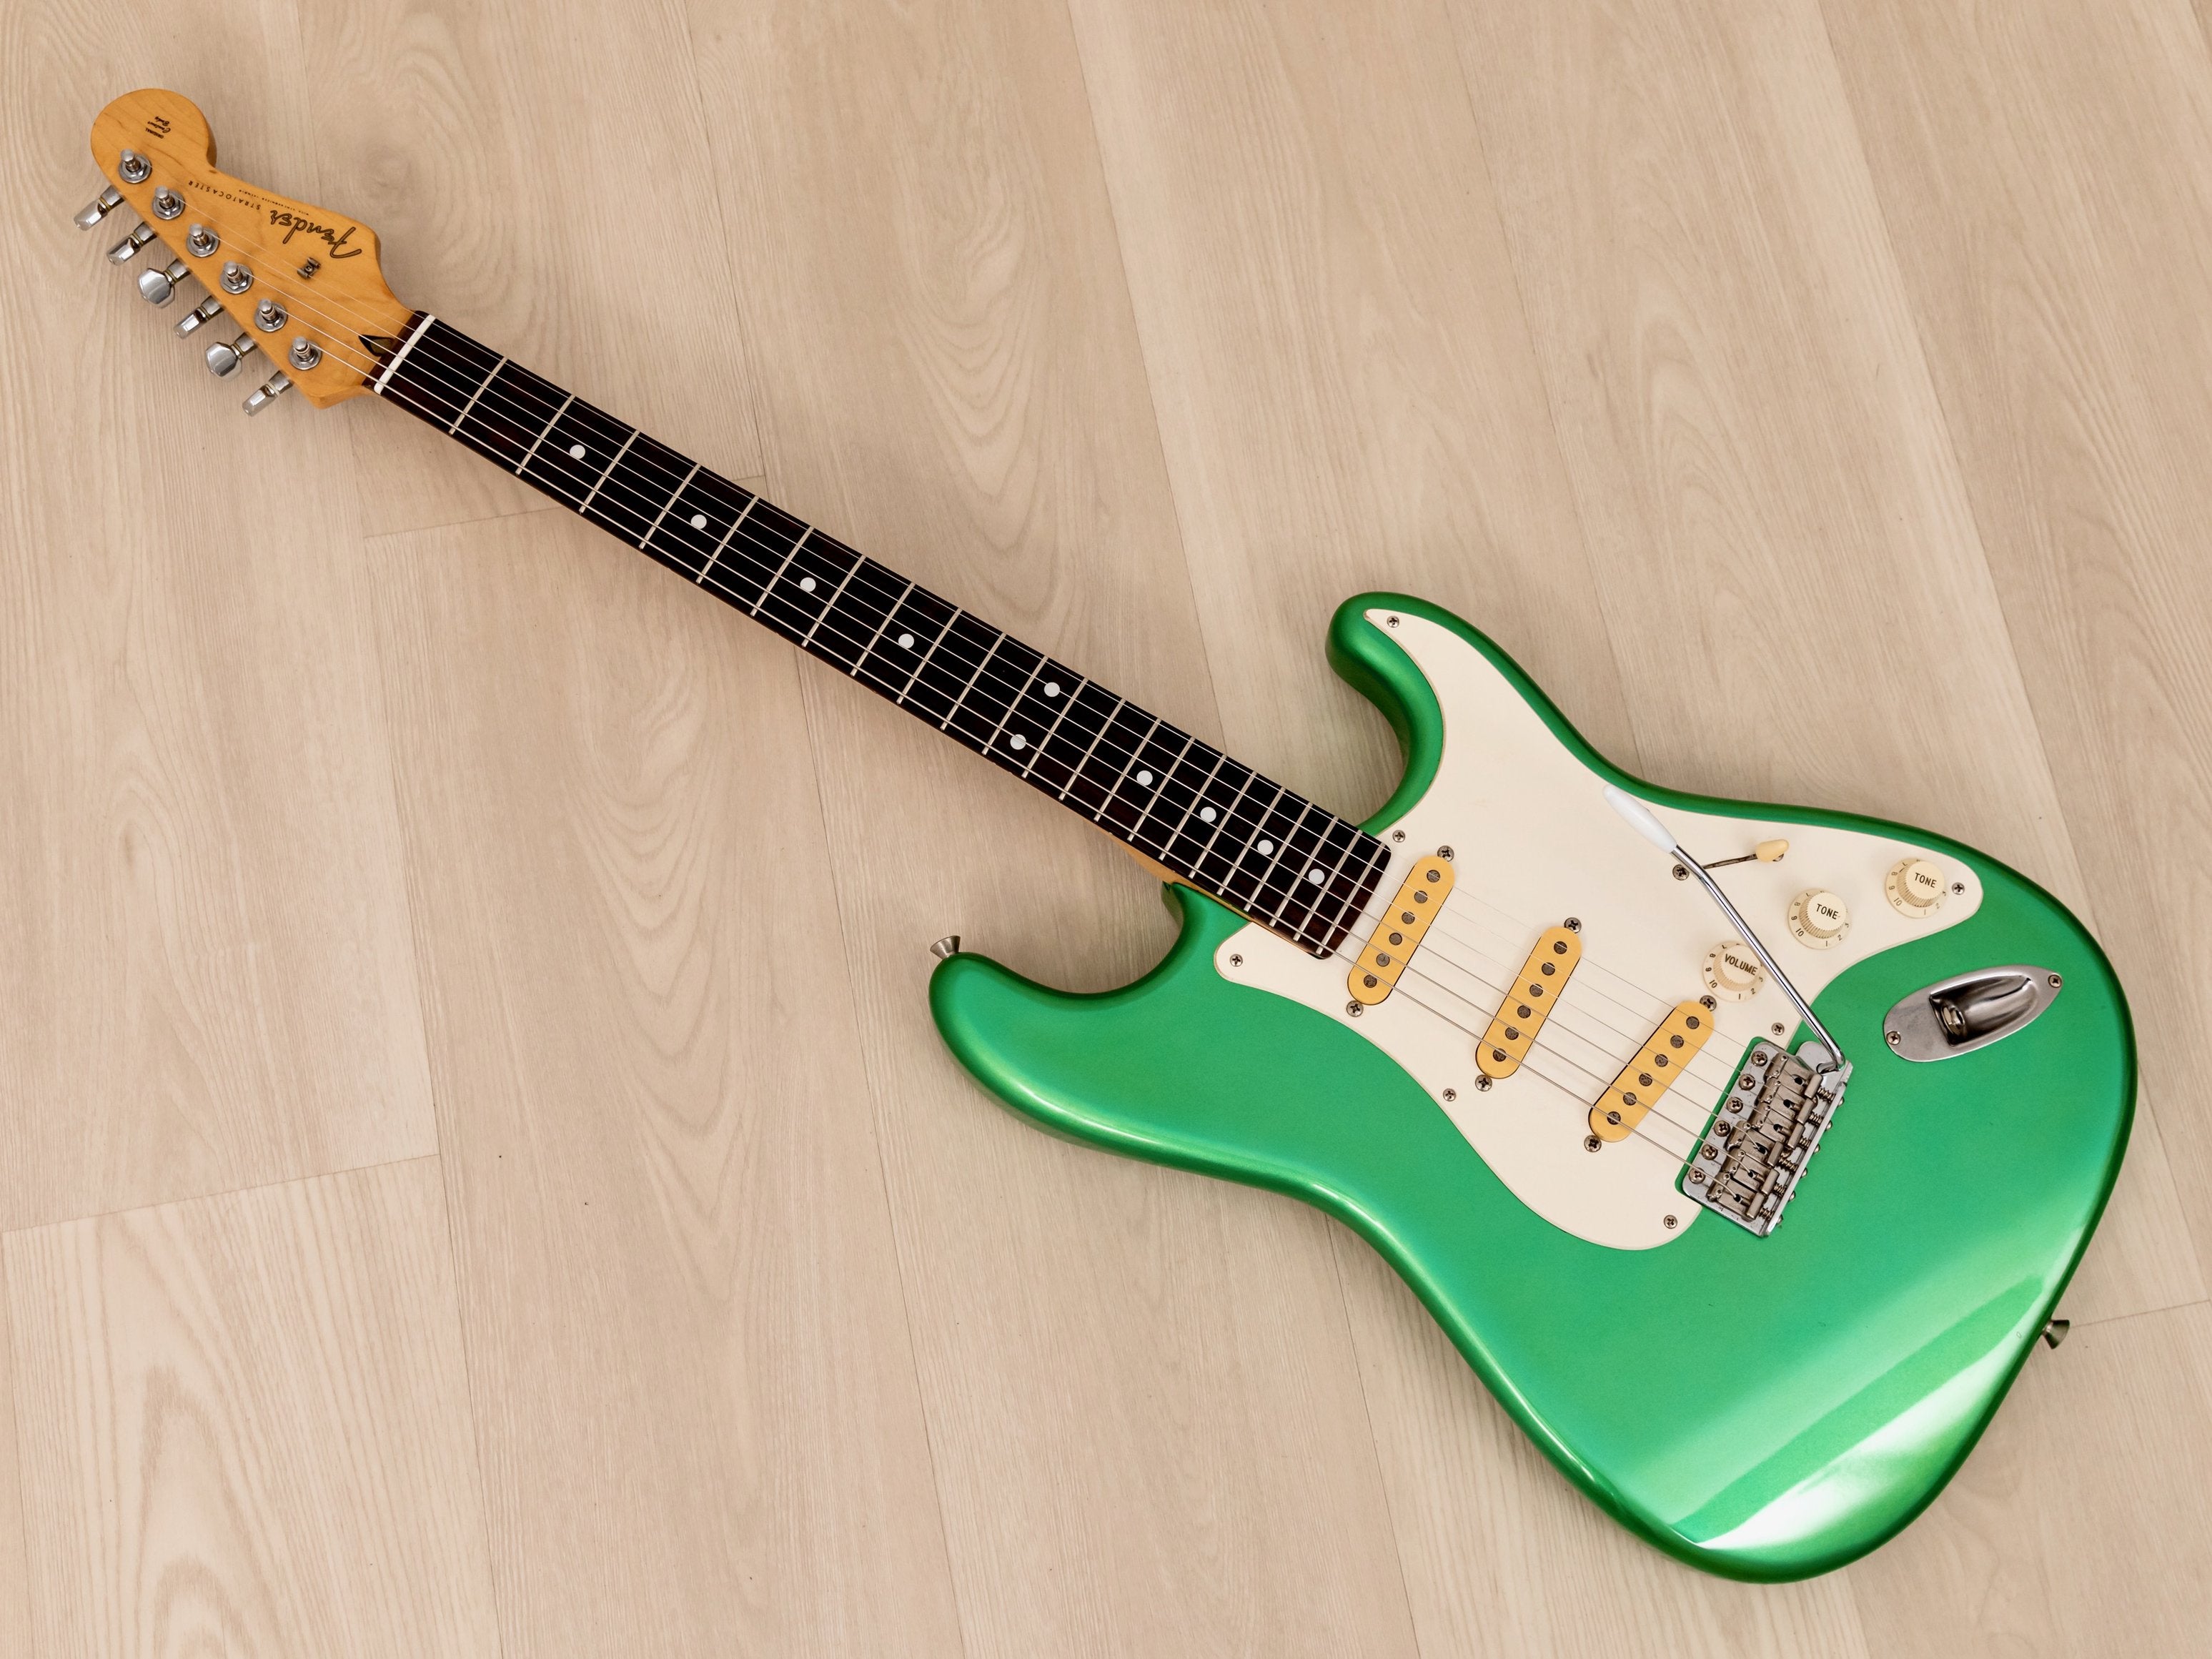 1991 Fender Stratocaster Model ST500-VR Metallic Green Near Mint w/ Case, Japan MIJ Fujigen